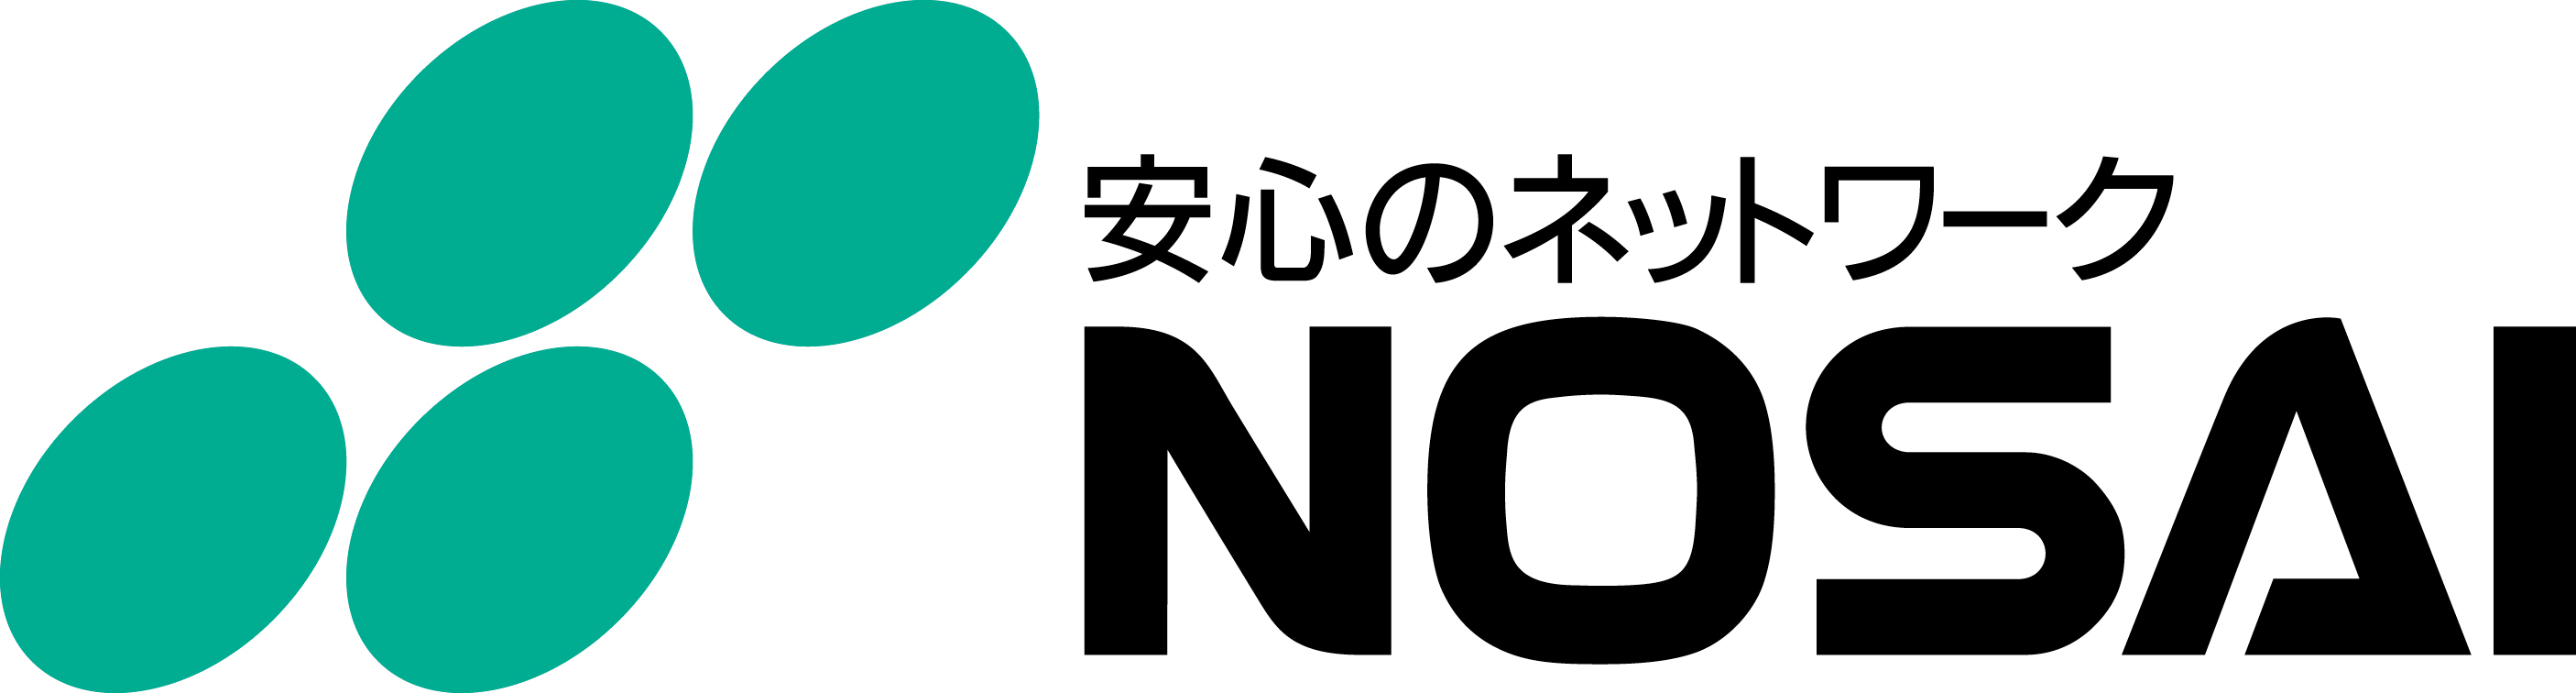 ロゴ:秋田県農業共済組合